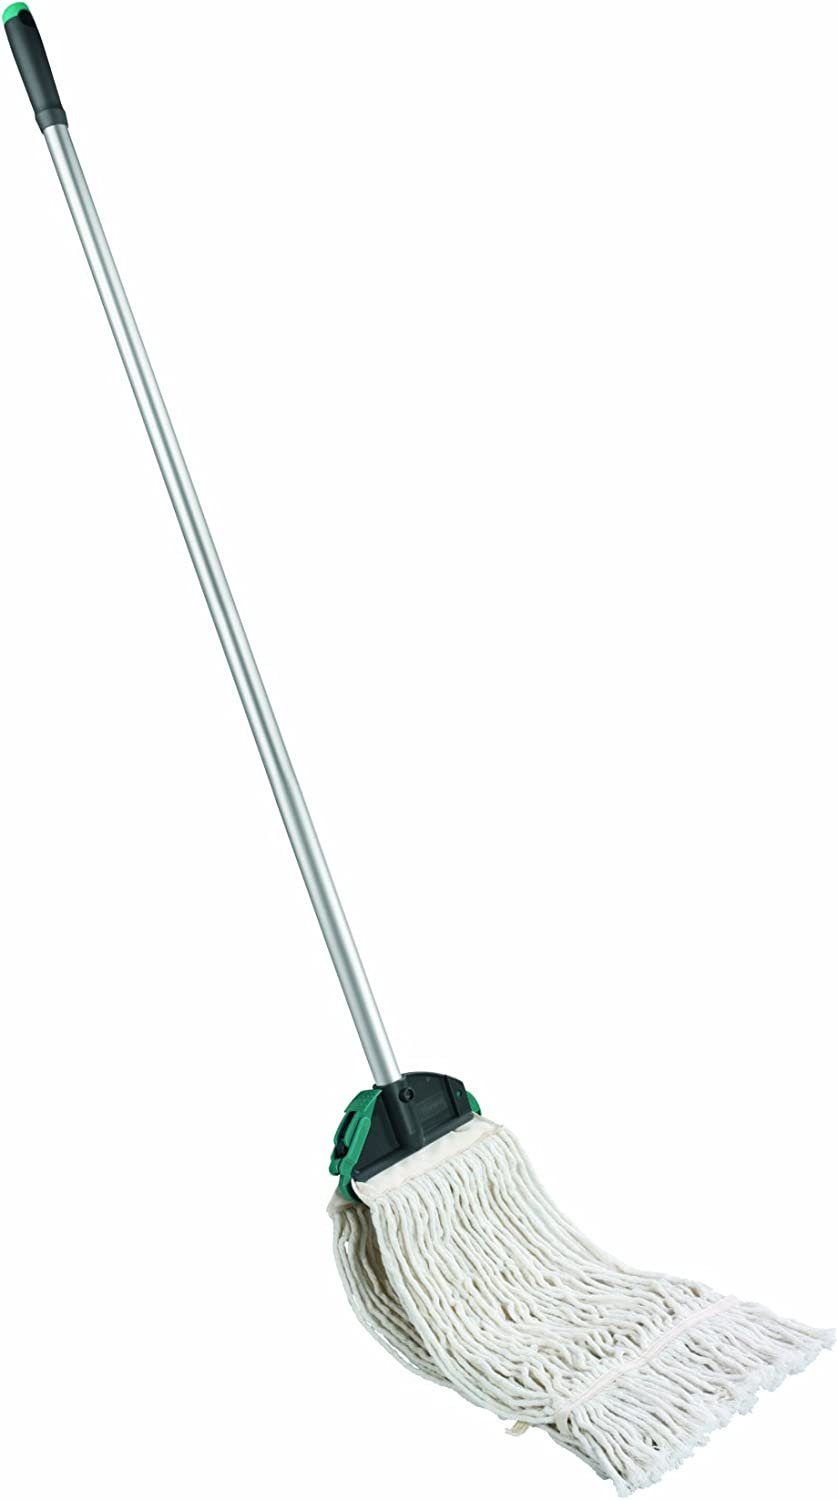 Leifheit Wischmopp Leifheit Professional Mop, Wischer für starke Verschmutzung, mit Aluminiumstiel 140 cm, Bodenwischer mit saugfähiger | Wischmopps